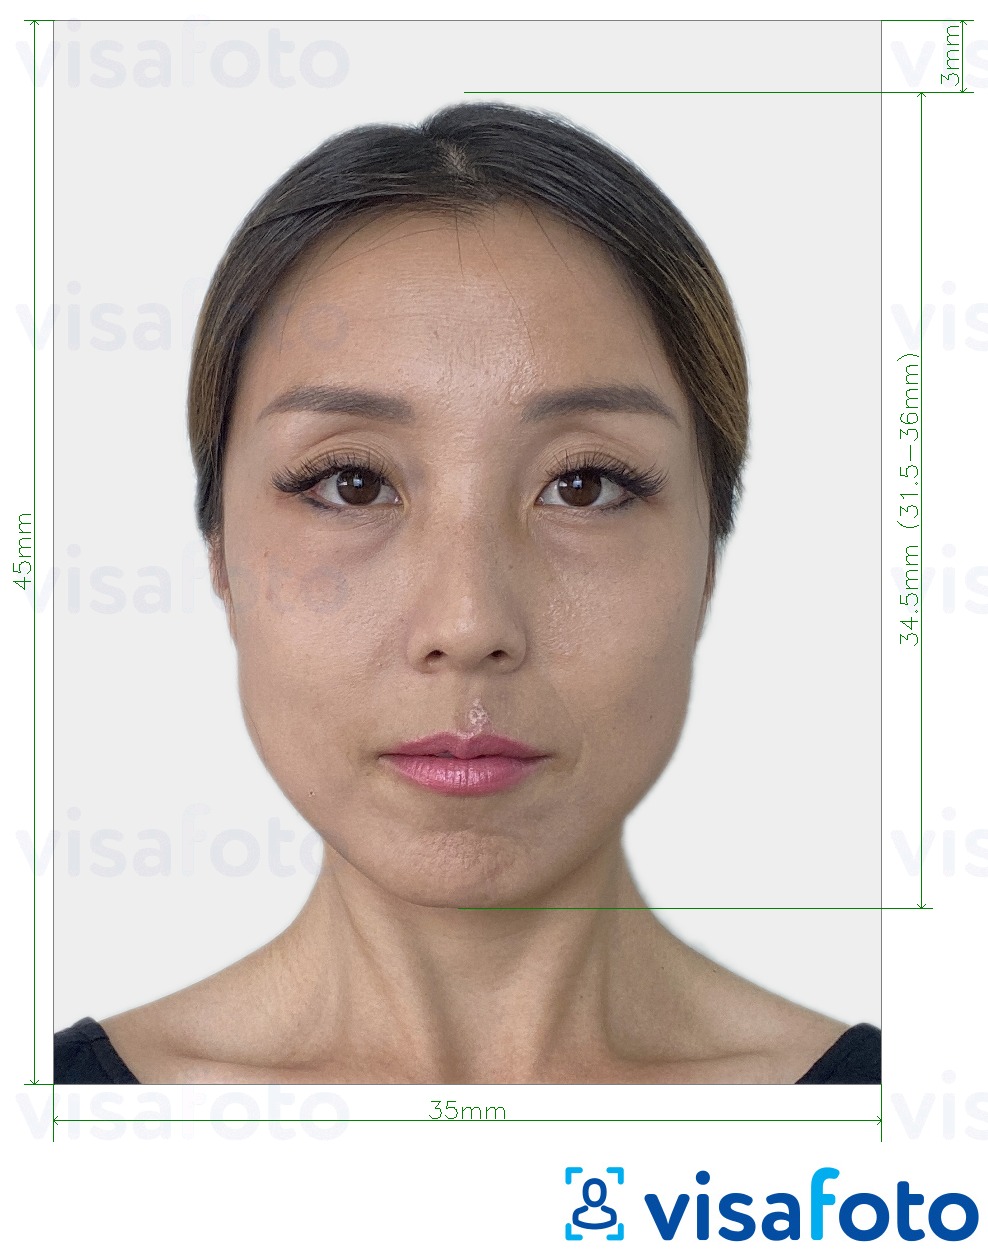 Exemple de foto per a Passaport de Corea del Sud 35x45 mm (3,5x4,5 cm) amb la mida exacta especificada